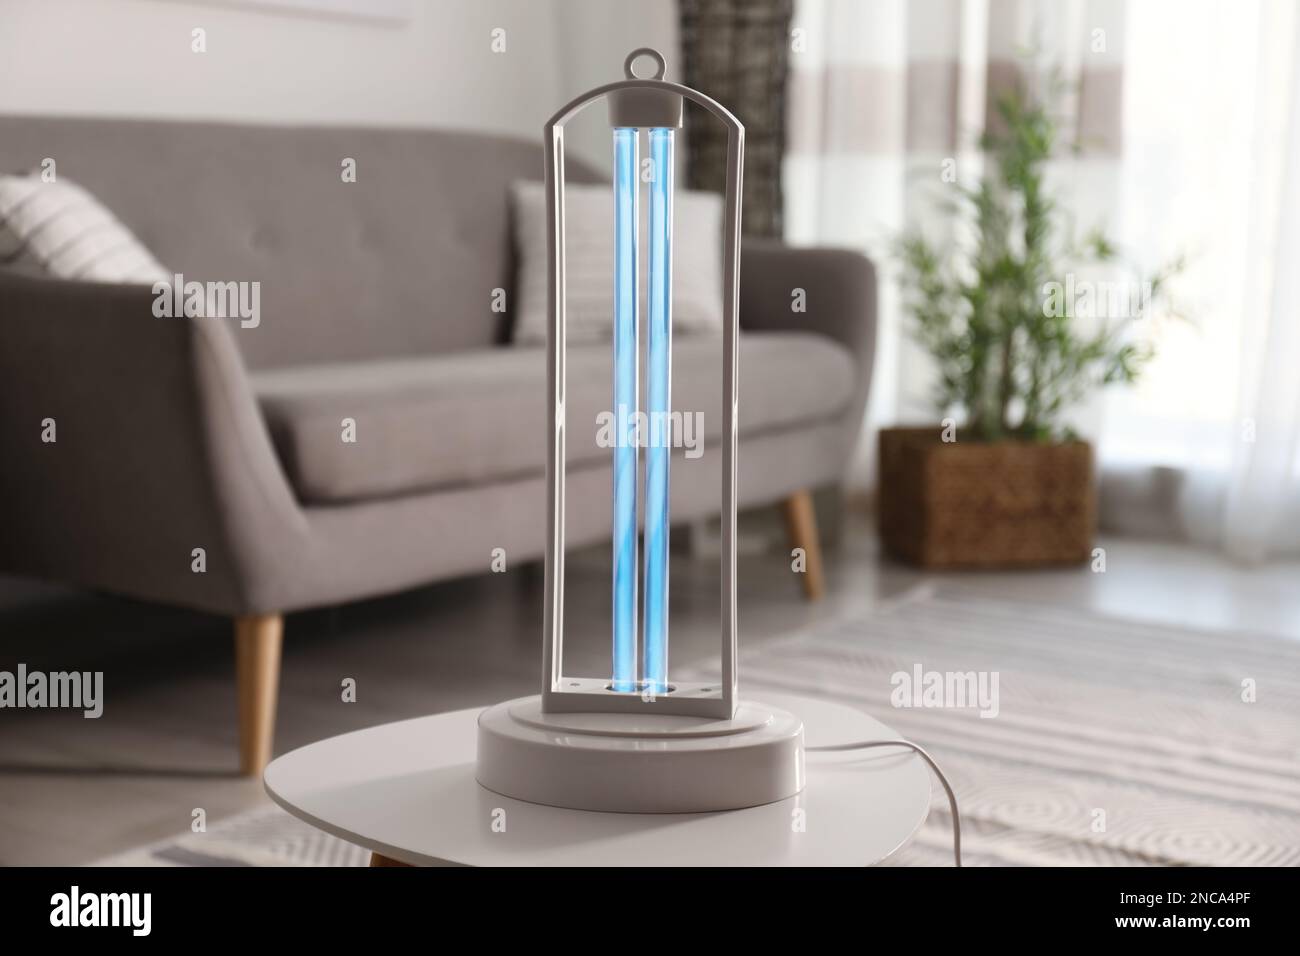 UV-Lampe zur leichten Sterilisation auf dem Tisch im Wohnzimmer  Stockfotografie - Alamy